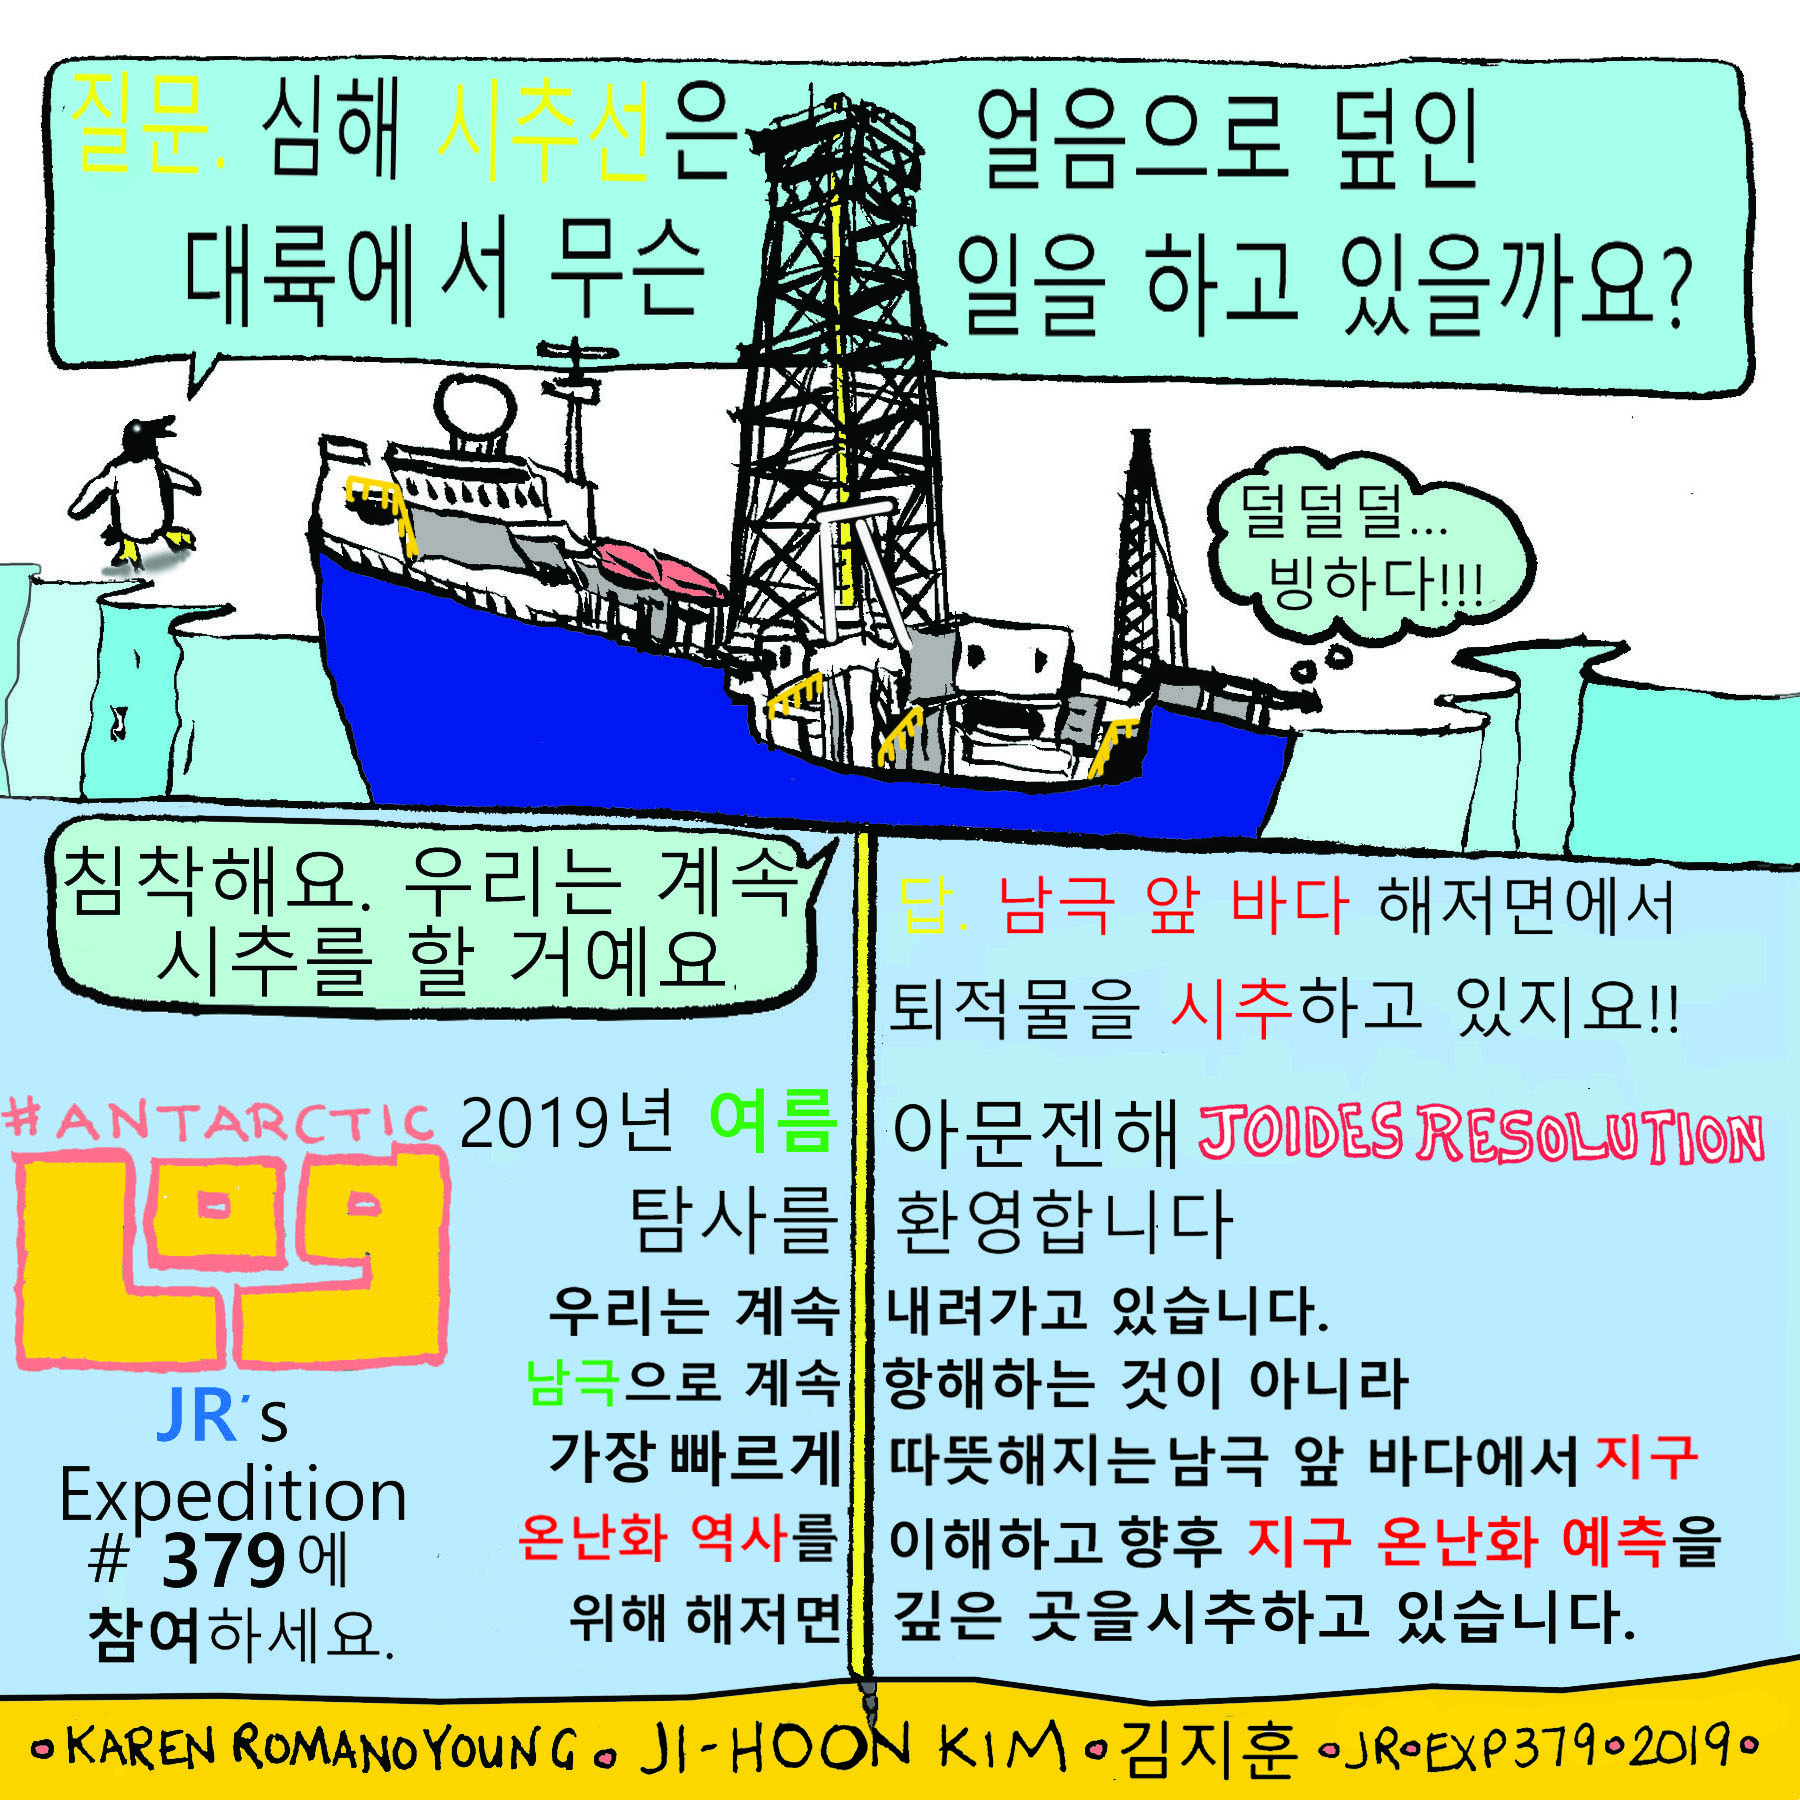 Log 75 Jan copy. 7 2019 Korean